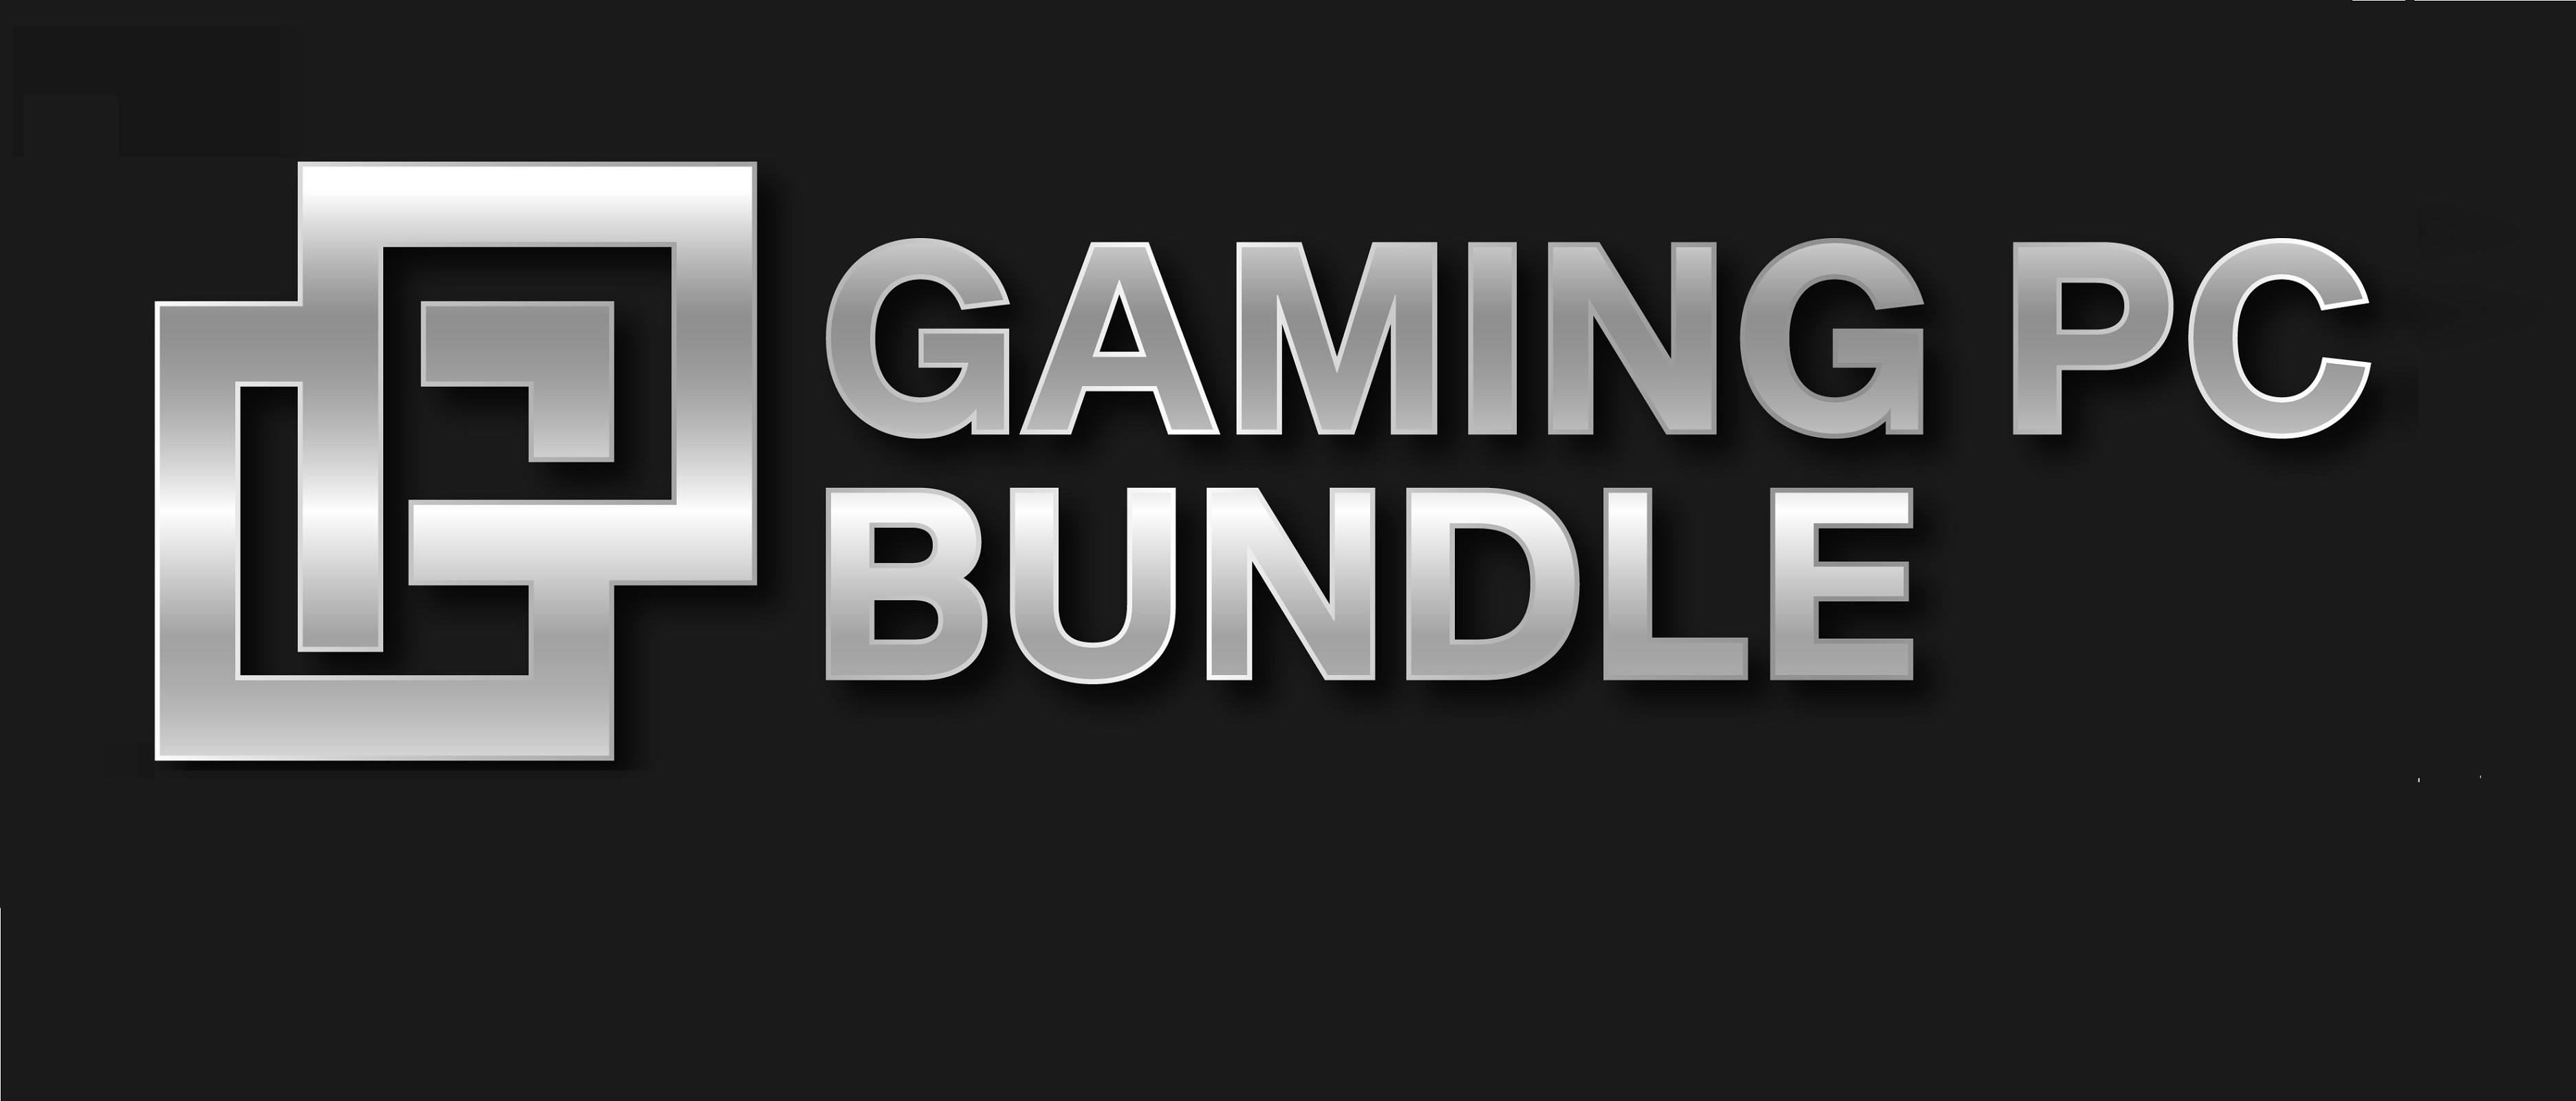 gaming pc bundle logo